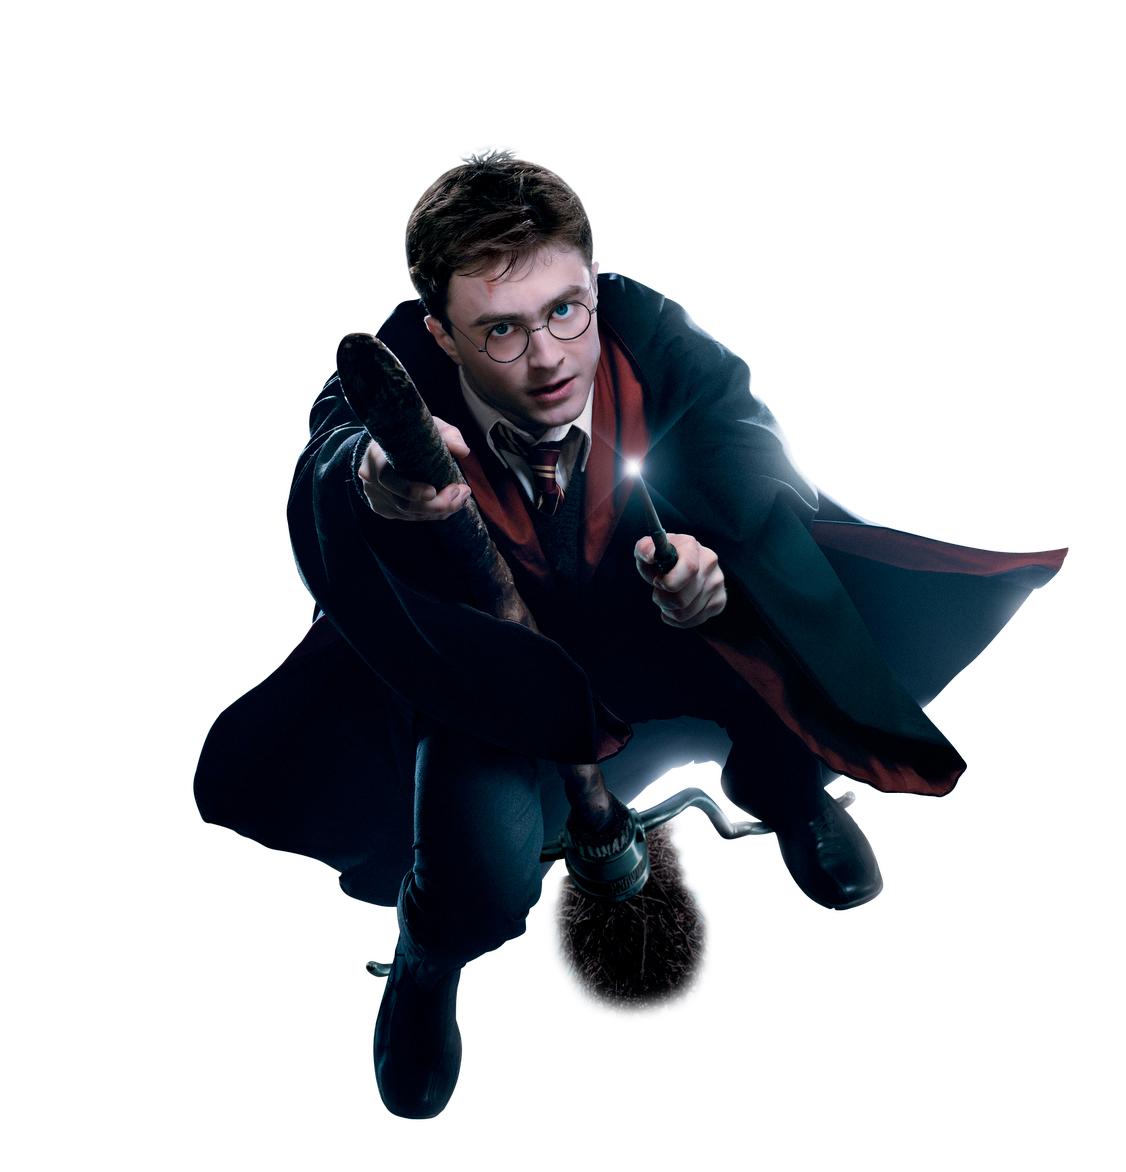 Harry Potter är i ropet igen efter att J.K. Rowling skrivit en ny berättelse om pojken som överlevde. Foto: Warner Brothers